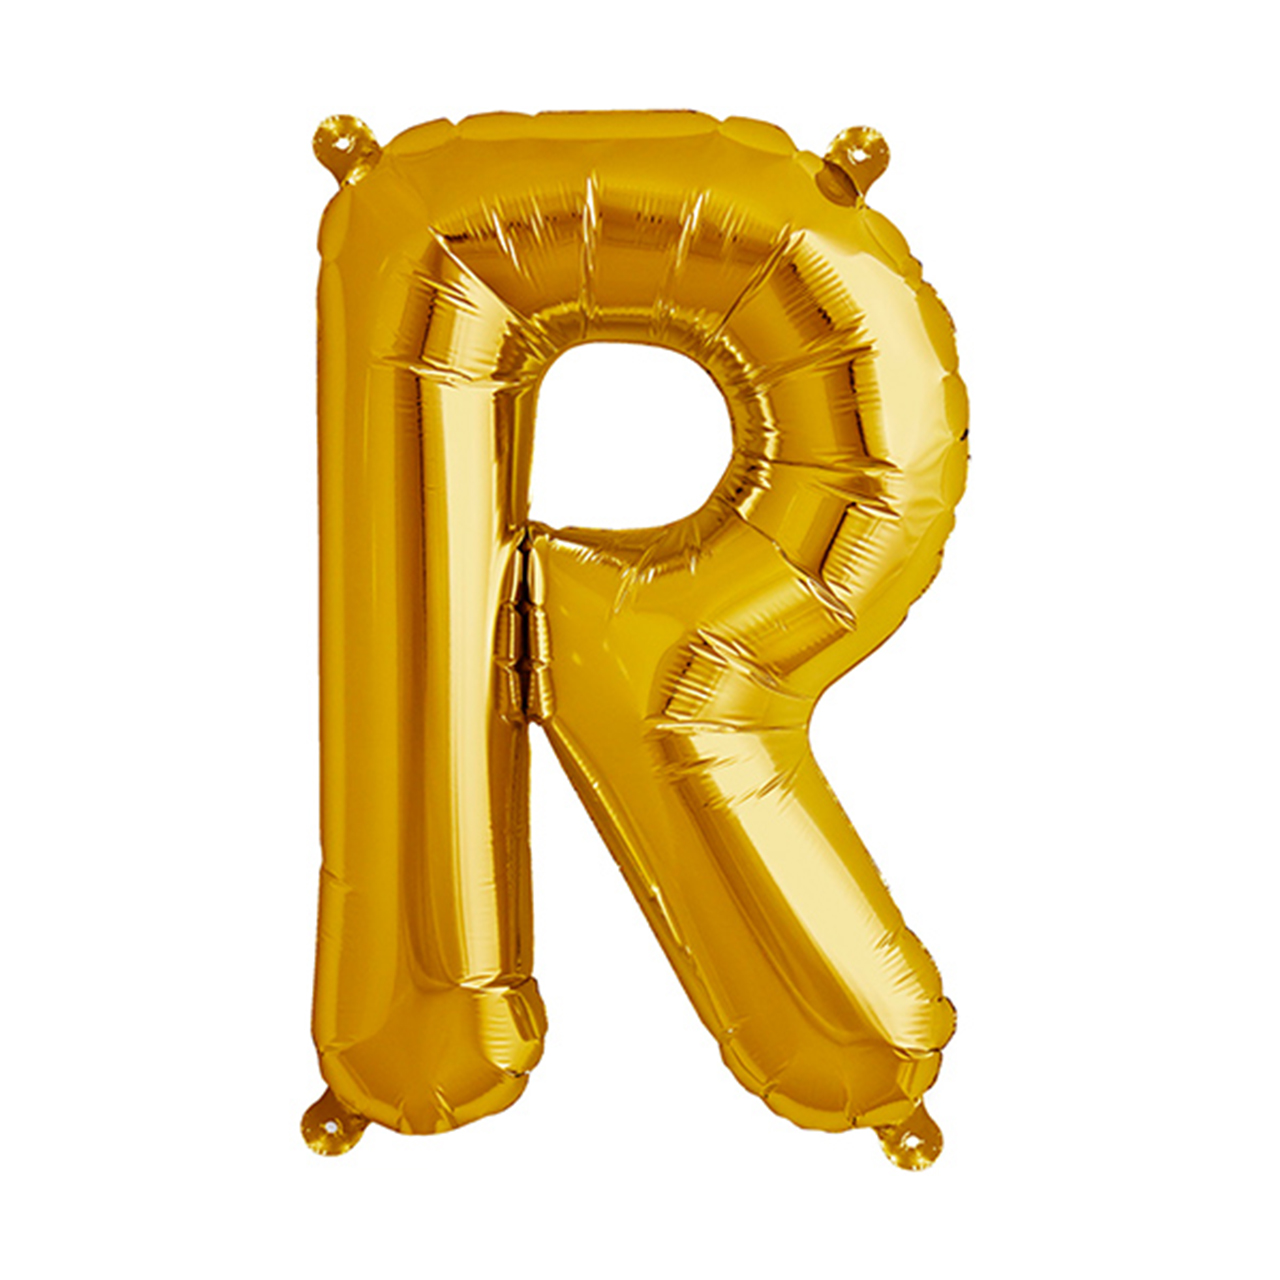 بادکنک فویلی سورتک طرح حروف انگلیسی مدل R